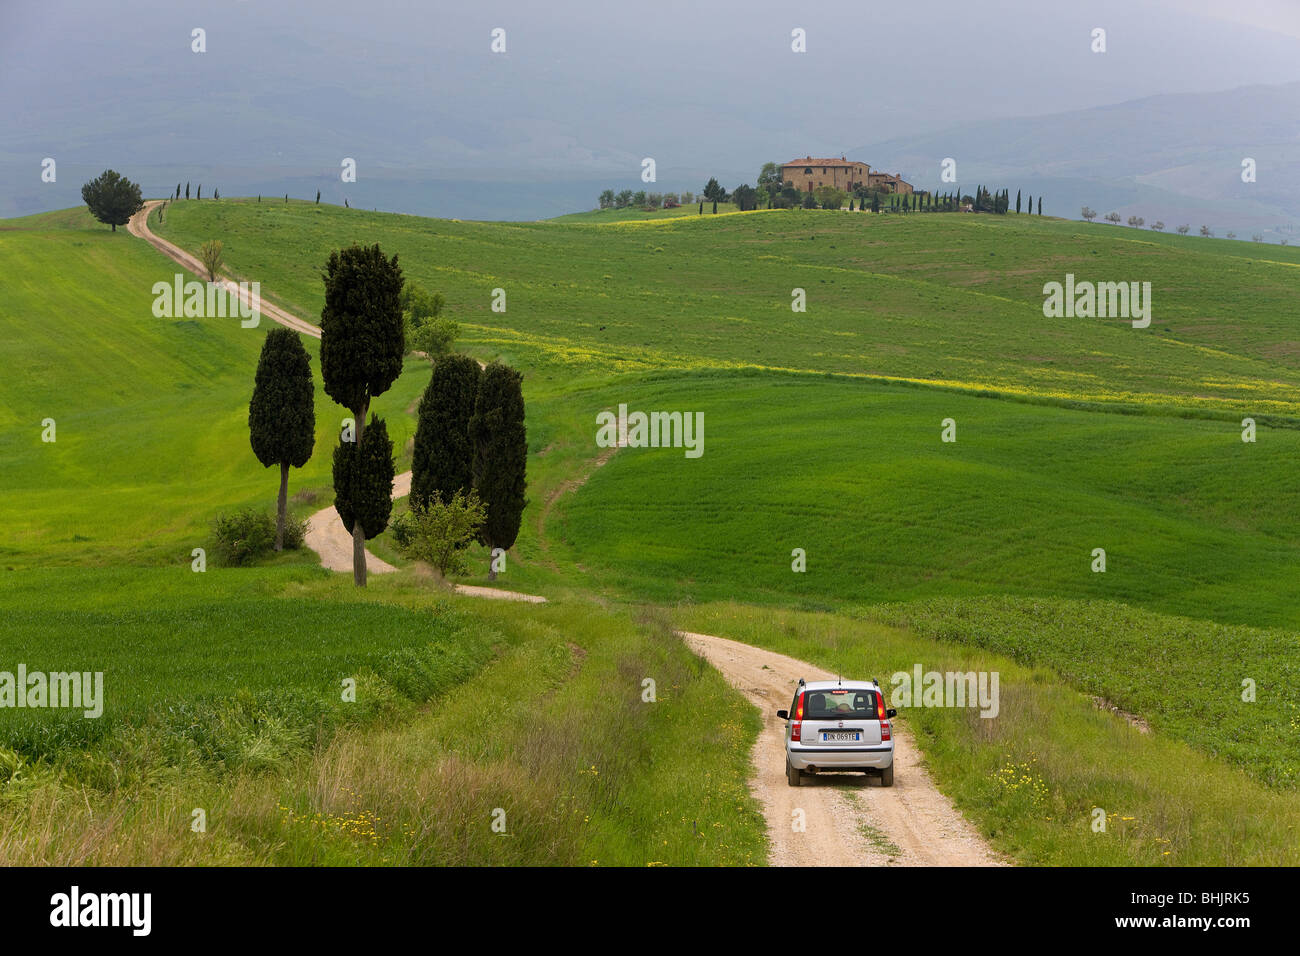 car heading towards farmhouse on winding road, Italy, Tuscany Stock Photo